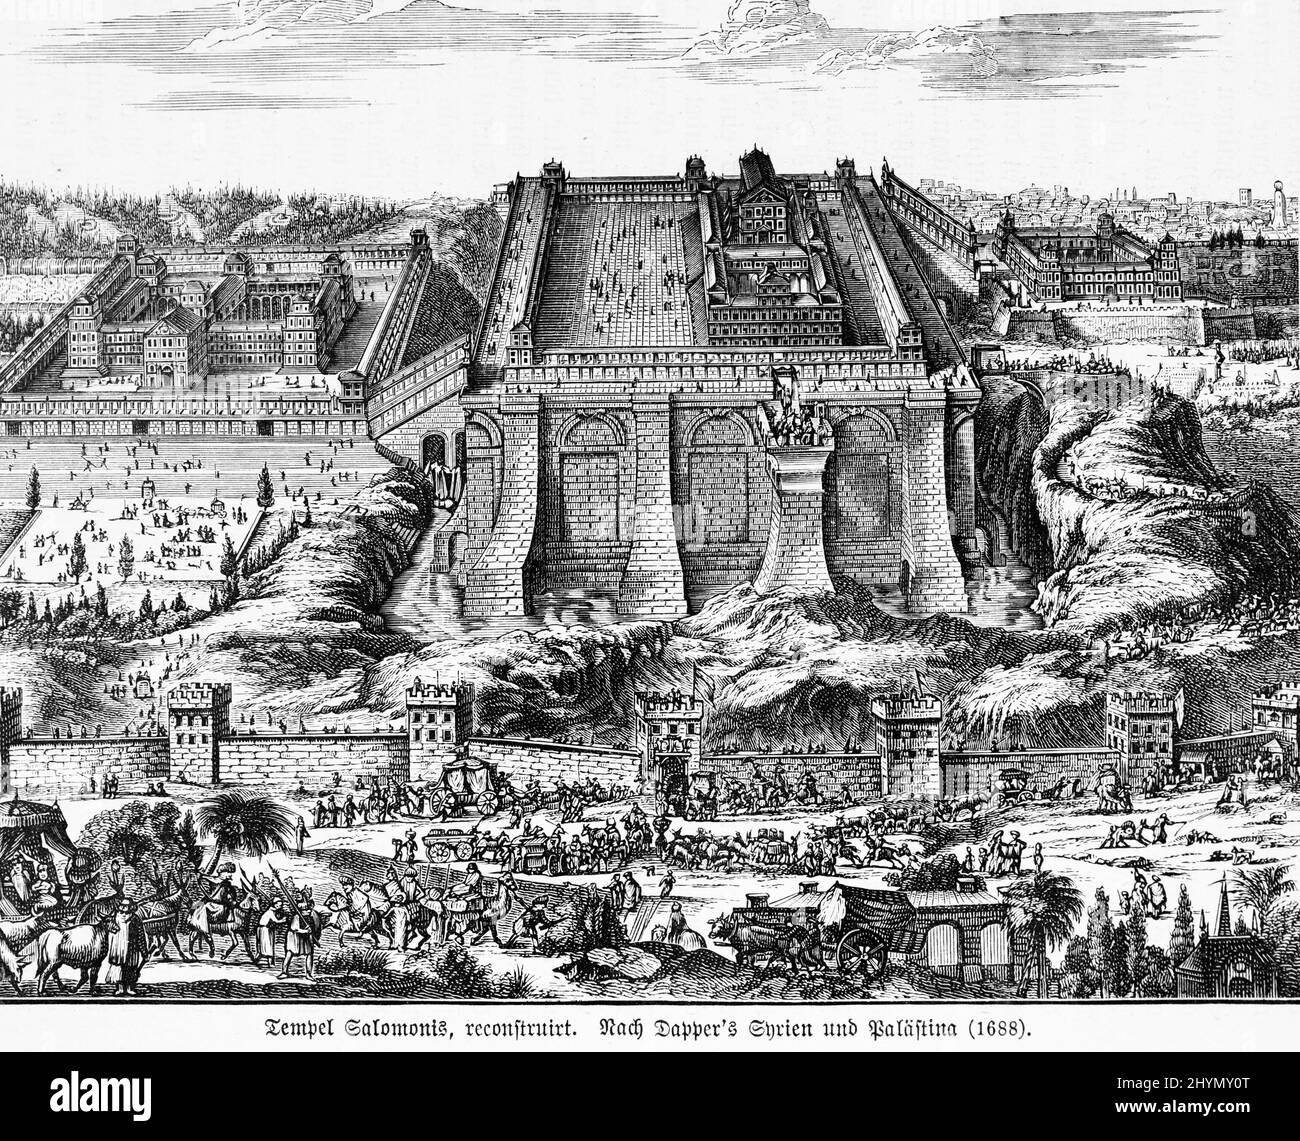 Complexe du Temple, Salomon, beaucoup de gens, mur de ville, calèches, 17th siècle, illustration historique, 1885, Jérusalem, Israël Banque D'Images